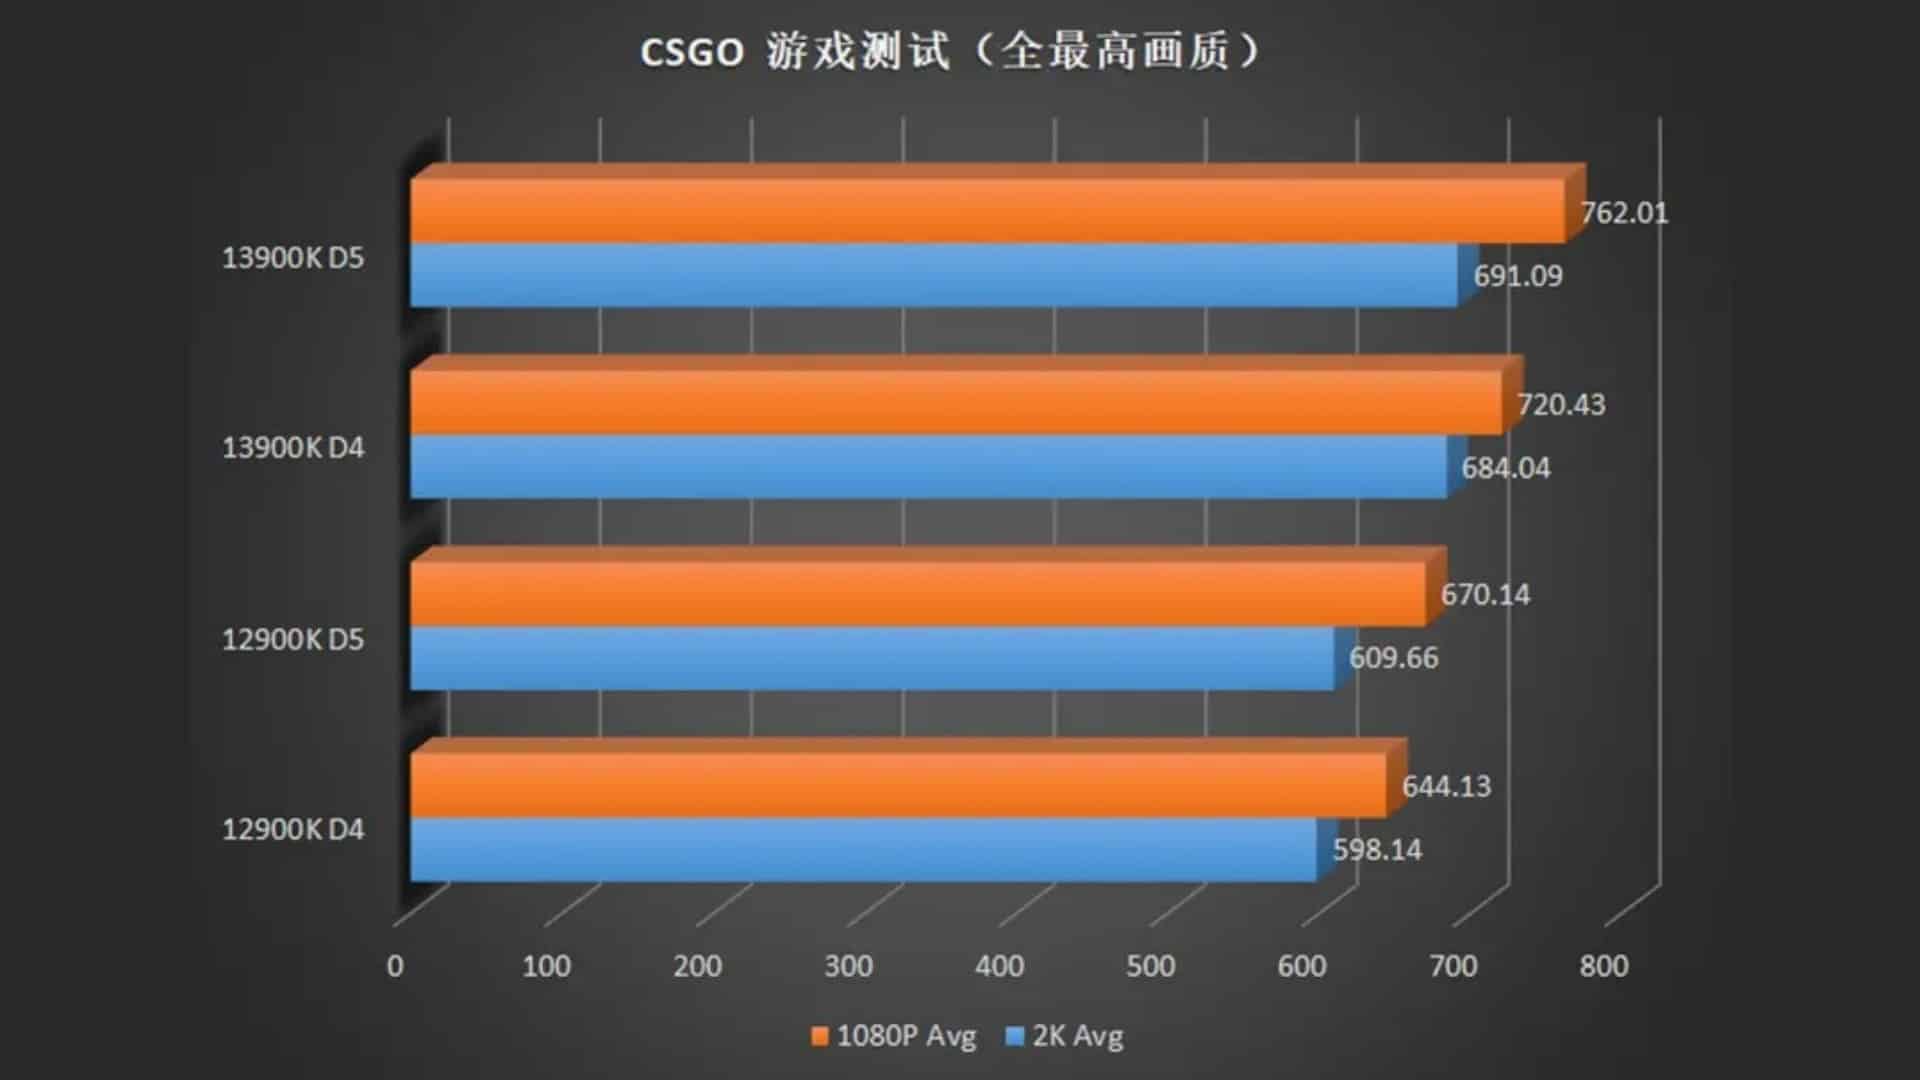 (Ecco come si comporta il Core i9 13900K rispetto al suo predecessore in CS:GO. (Fonte immagine: ECMS_Official))